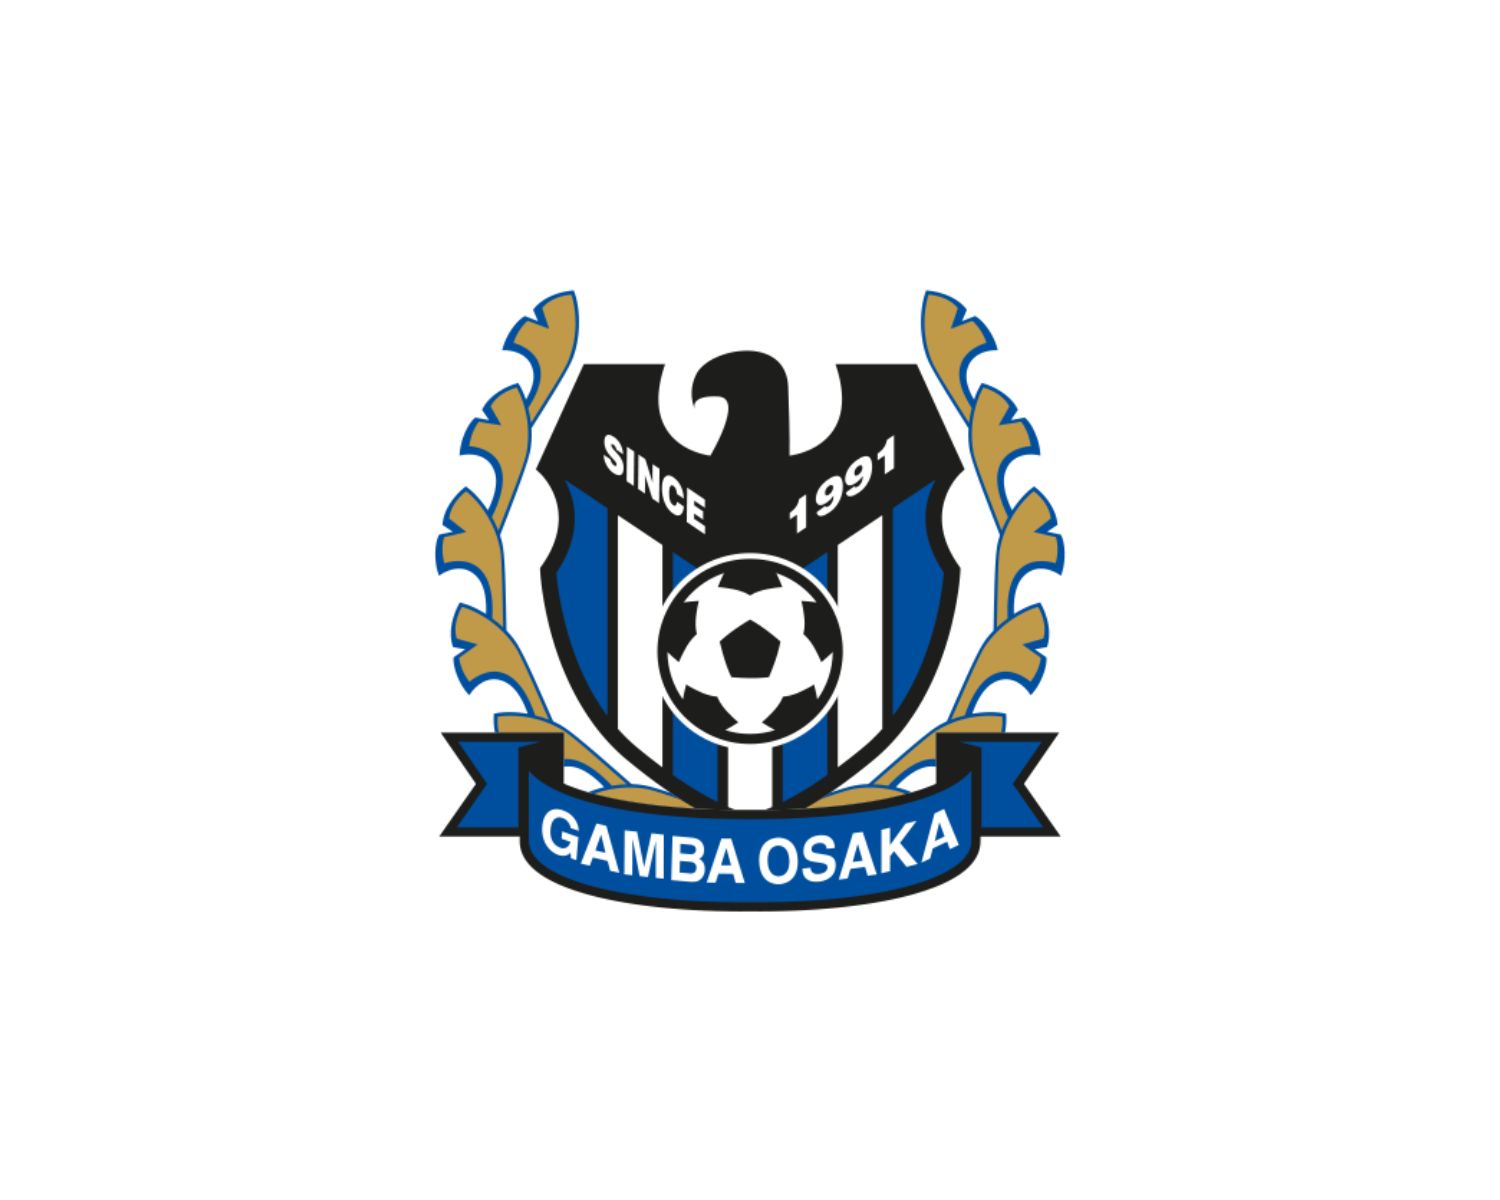 gamba-osaka-22-football-club-facts